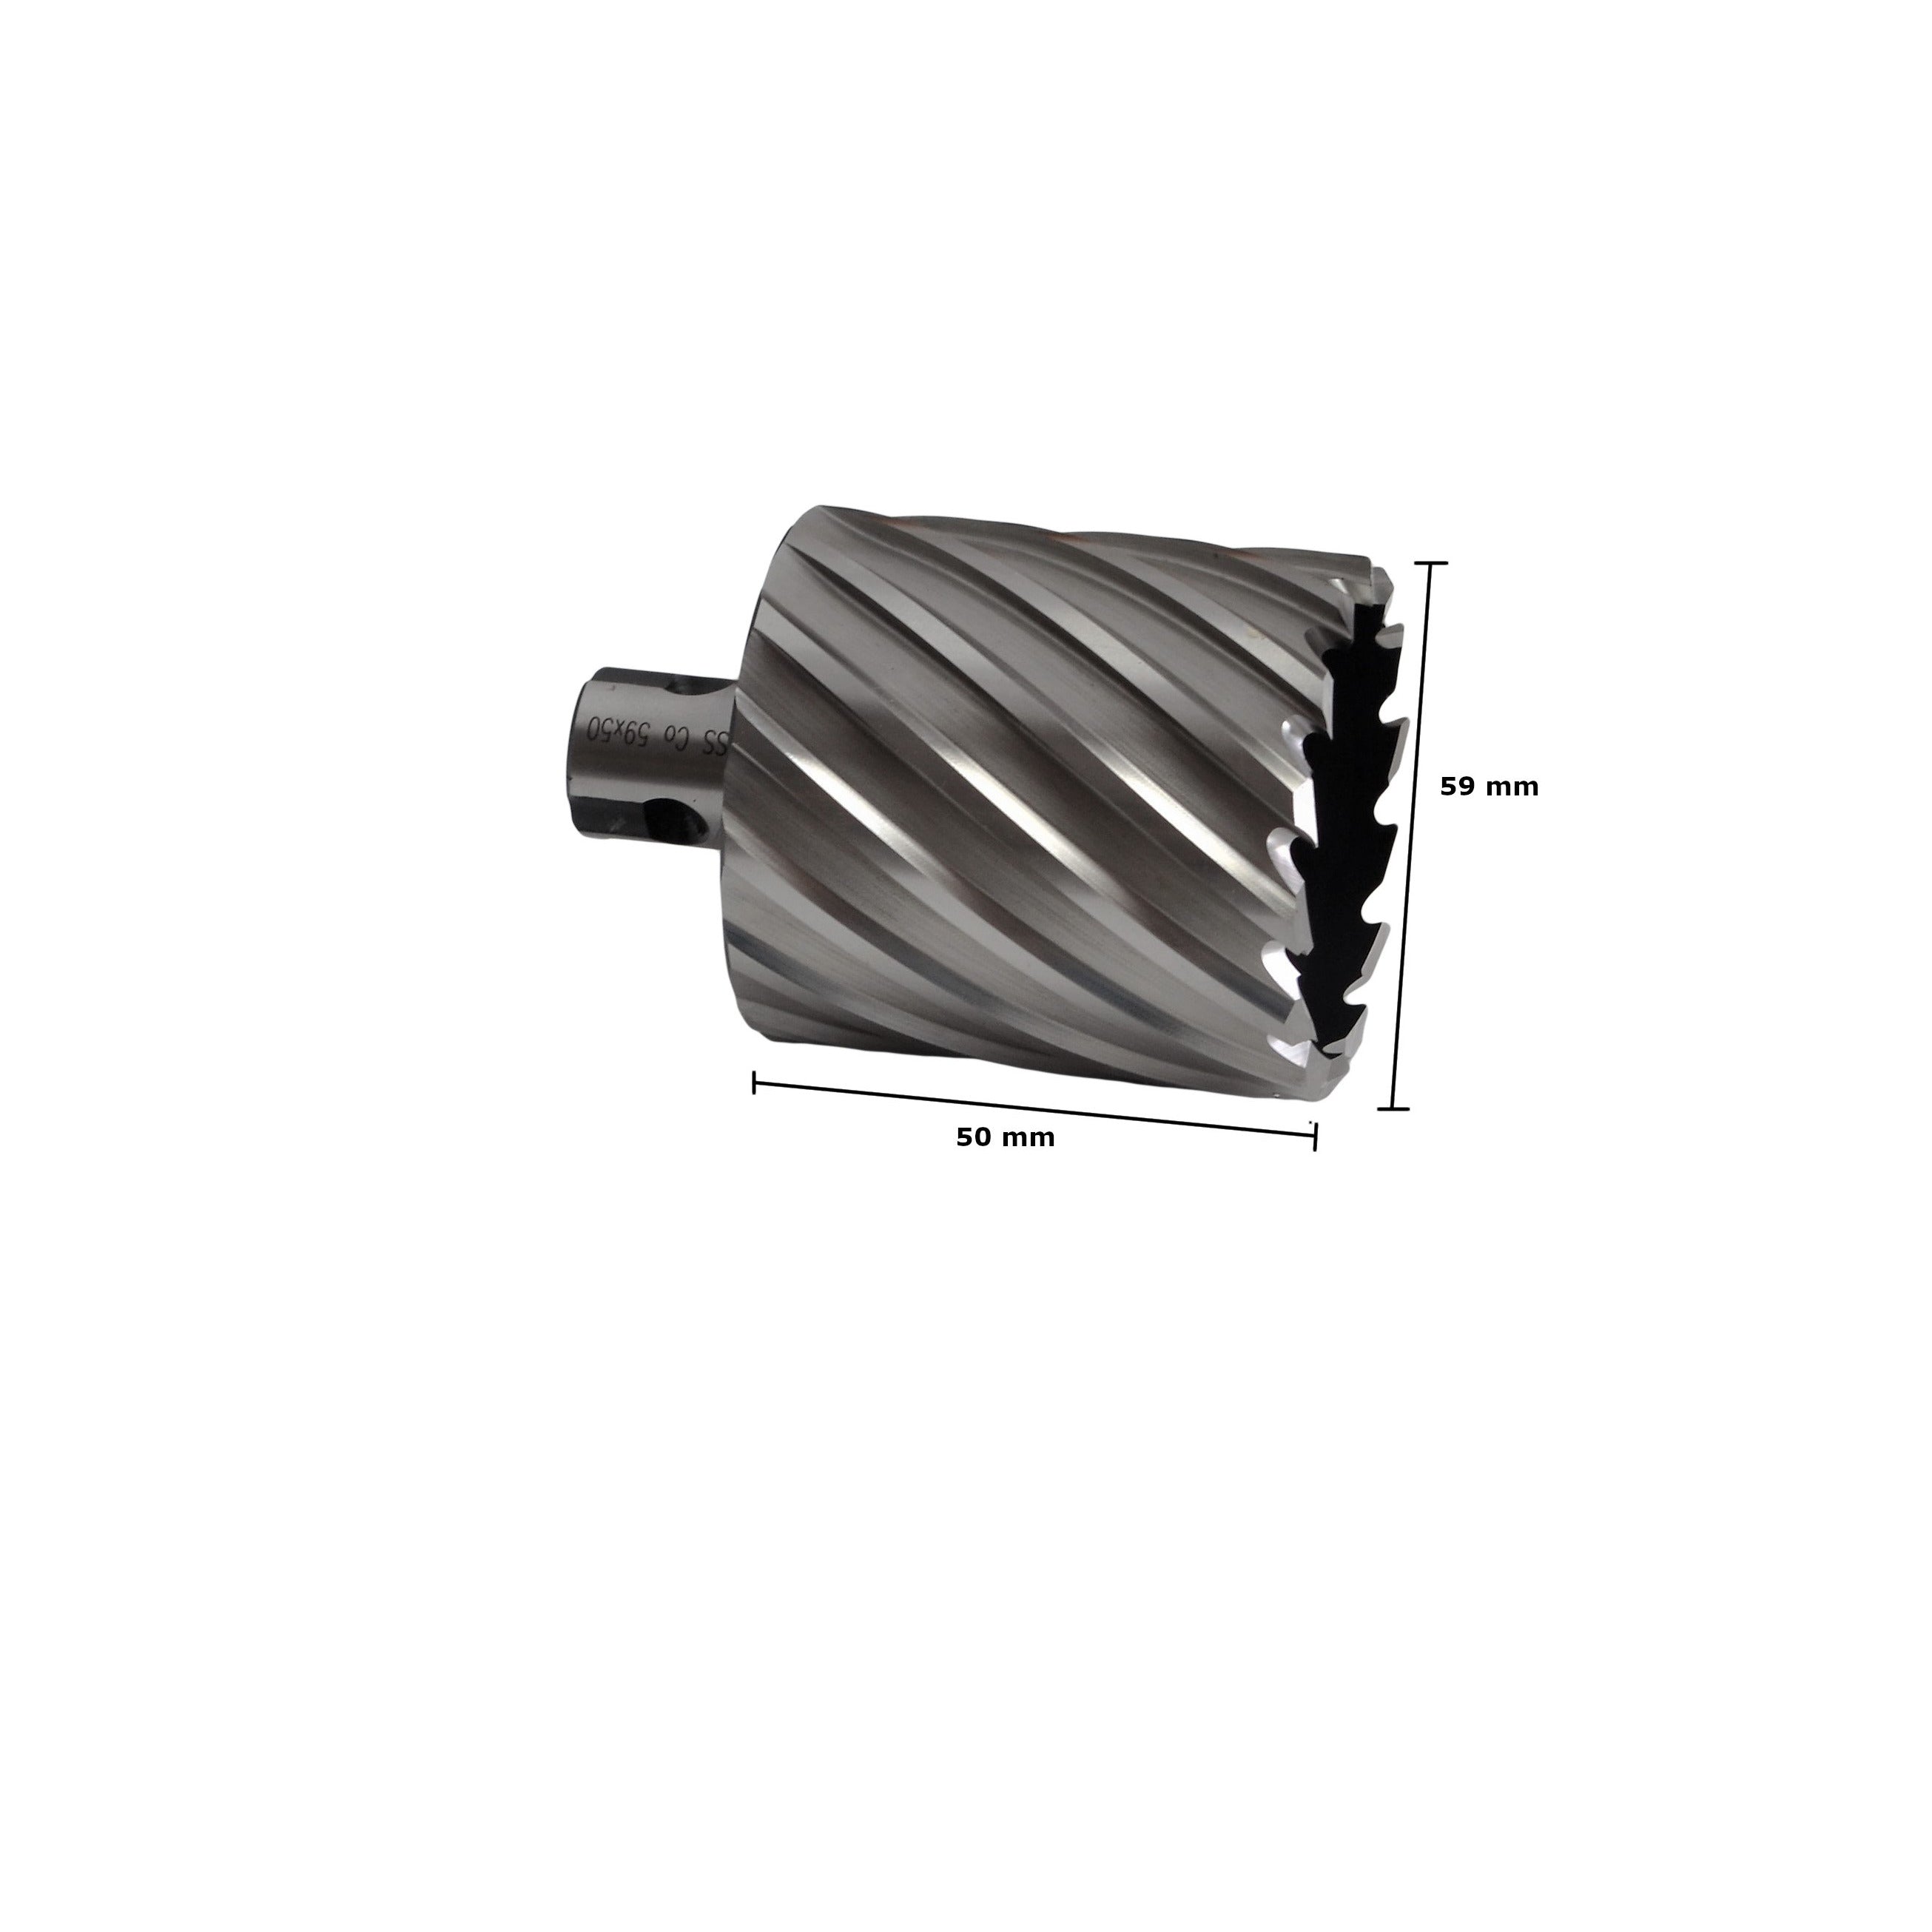 annular cutter broach cut universal shank rotabroach slugger 59x50mm industrial CNC HSS metalwork supplies